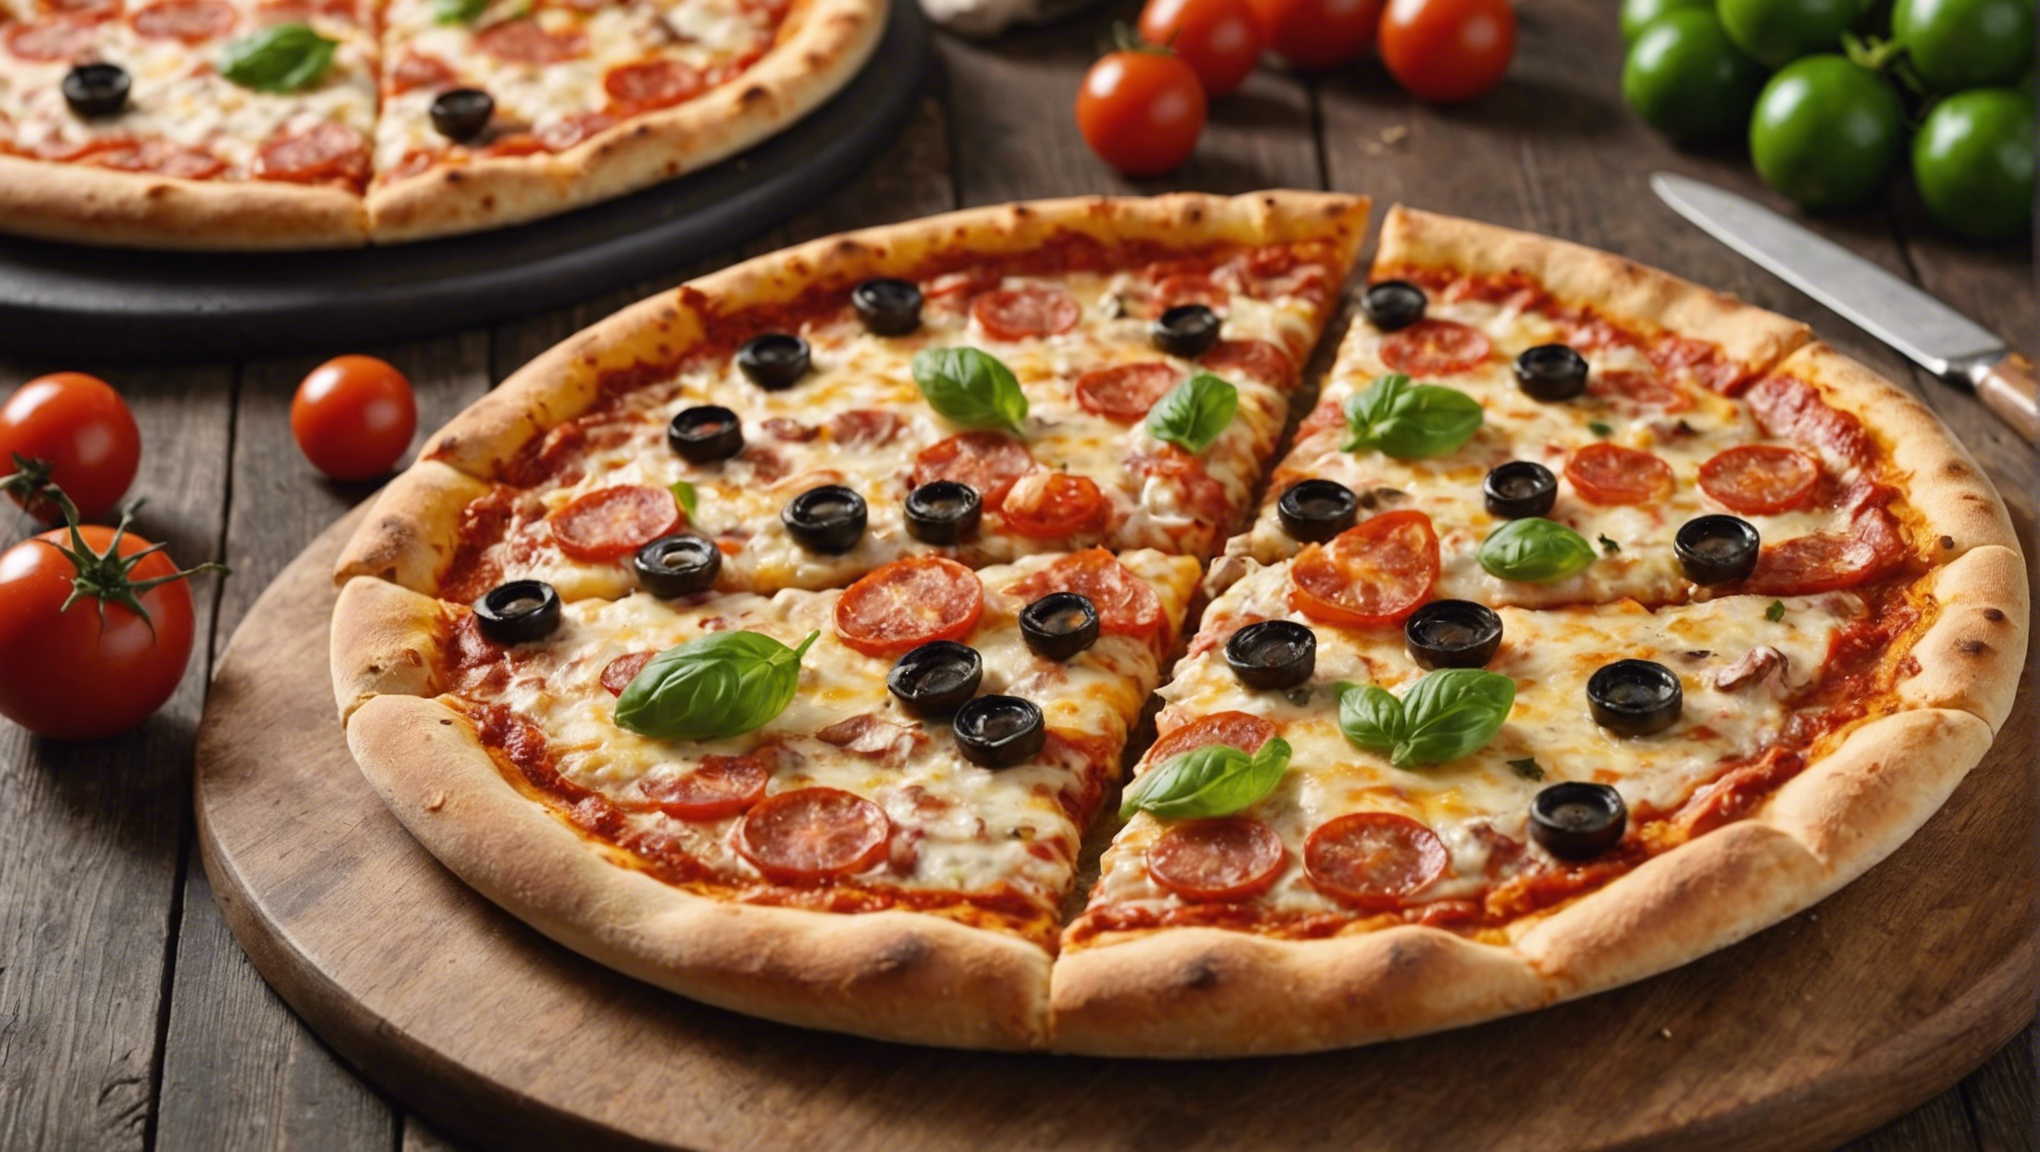 découvrez le dernier modèle de four à pizza de chez lidl, le meilleur choix pour des pizzas délicieuses à la maison !